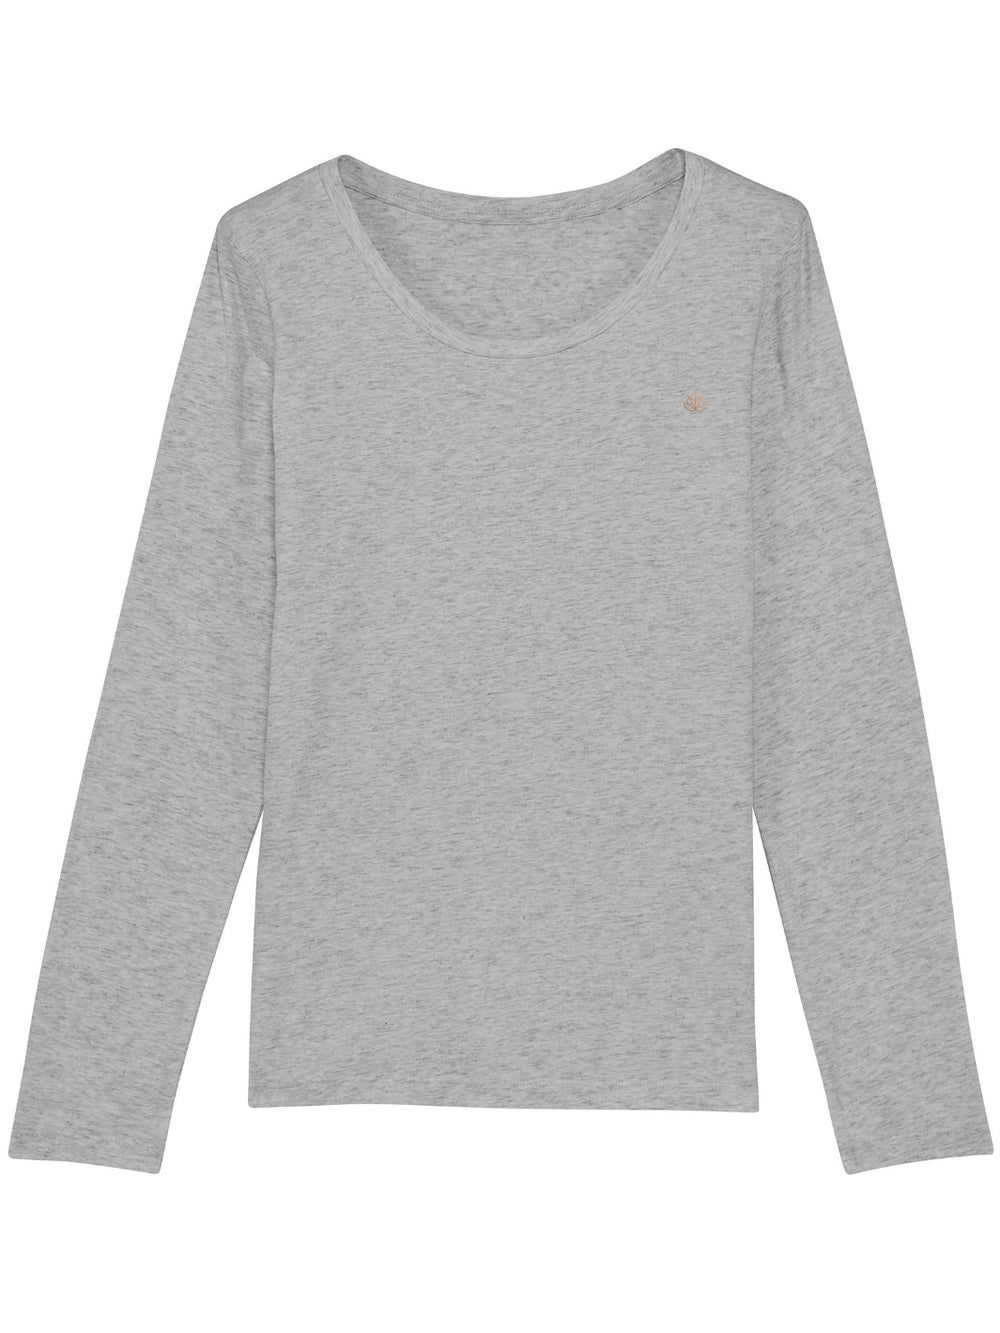 Harmony dámské tričko s dlouhým rukávem z biobavlny s kulatým výstřihem šedé produkt